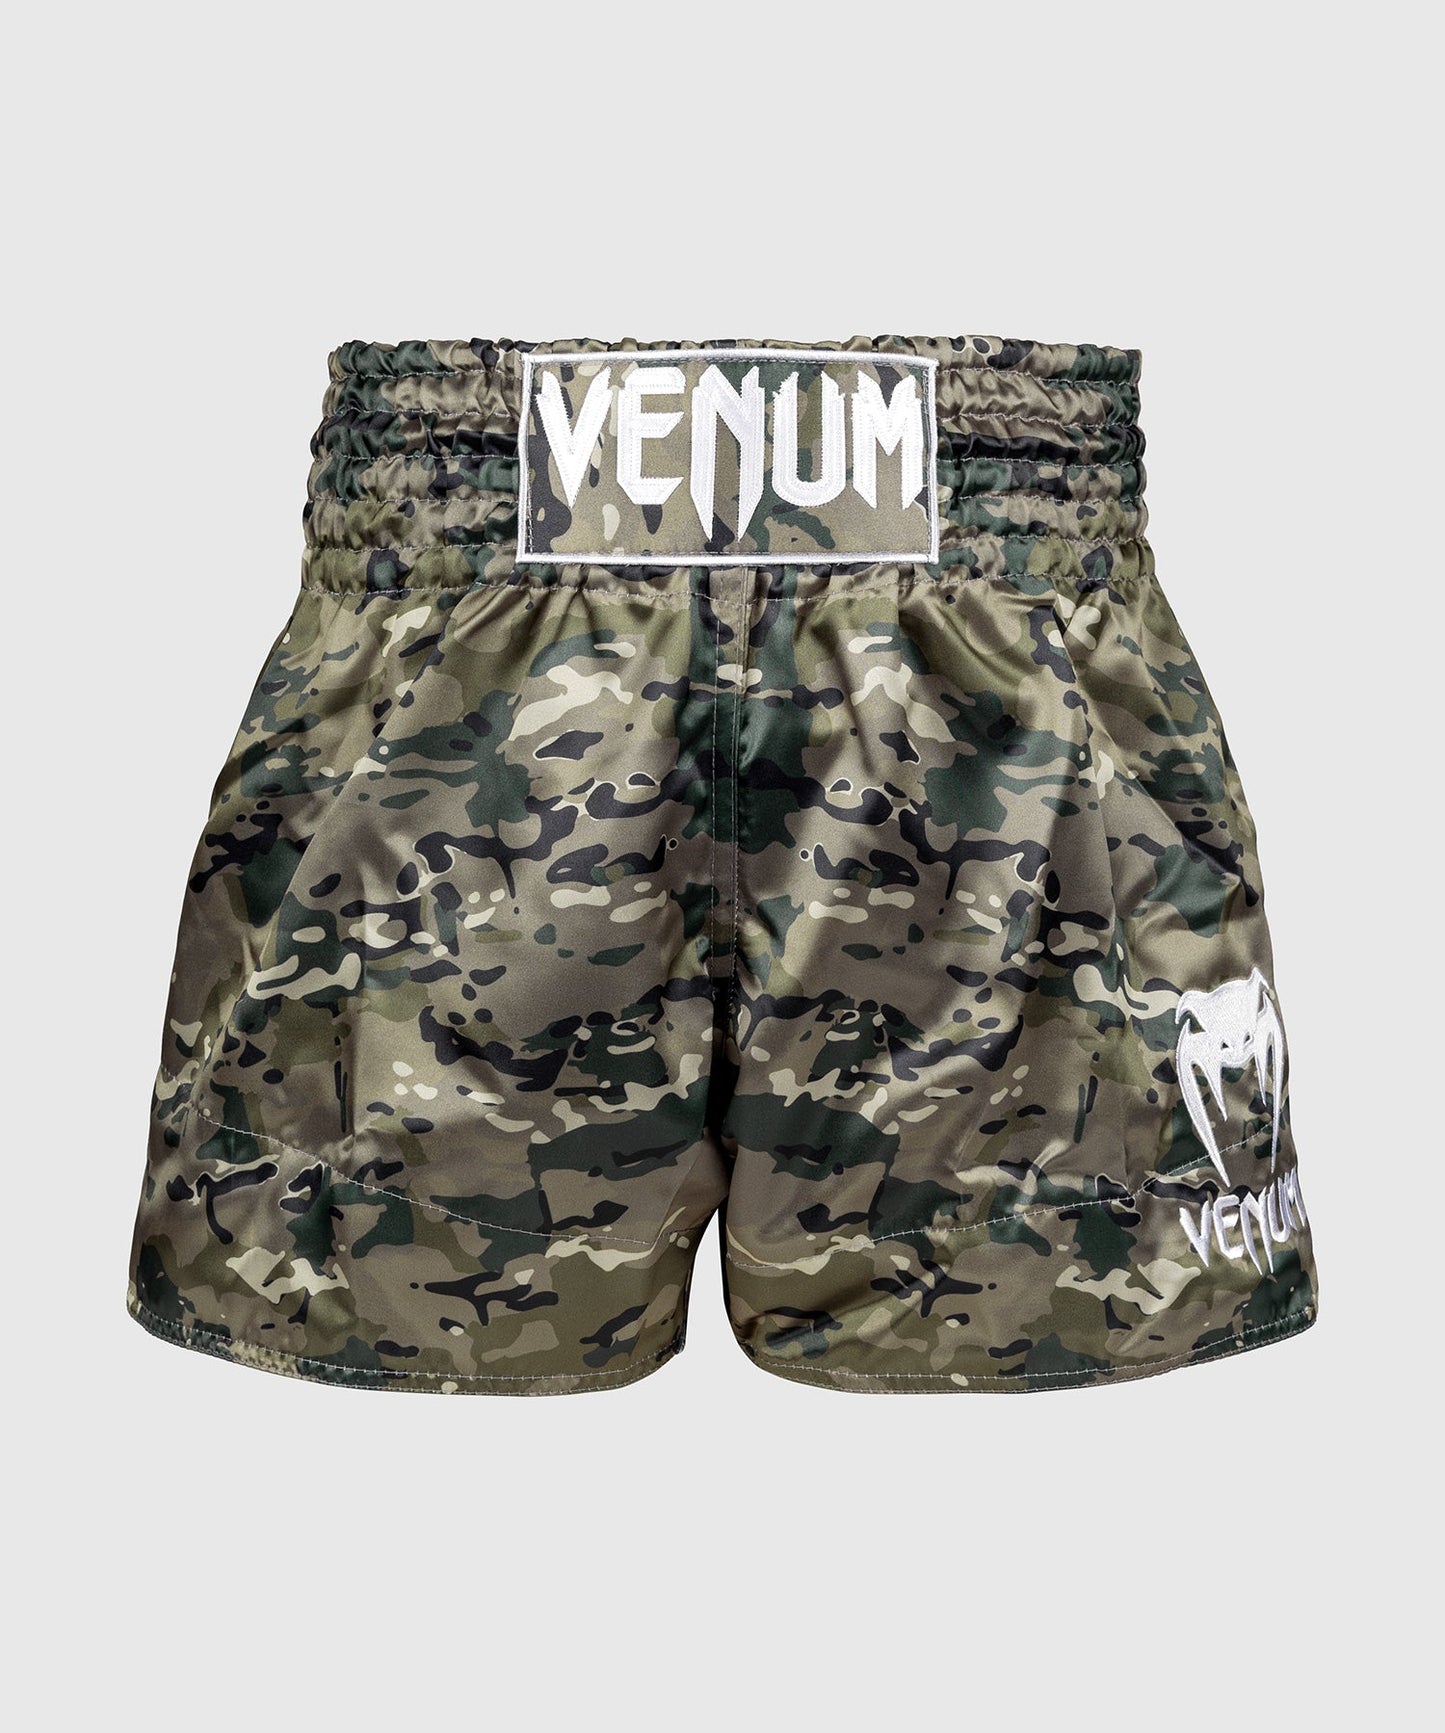 Venum Classic Muay Thai Shorts - Desert Camo